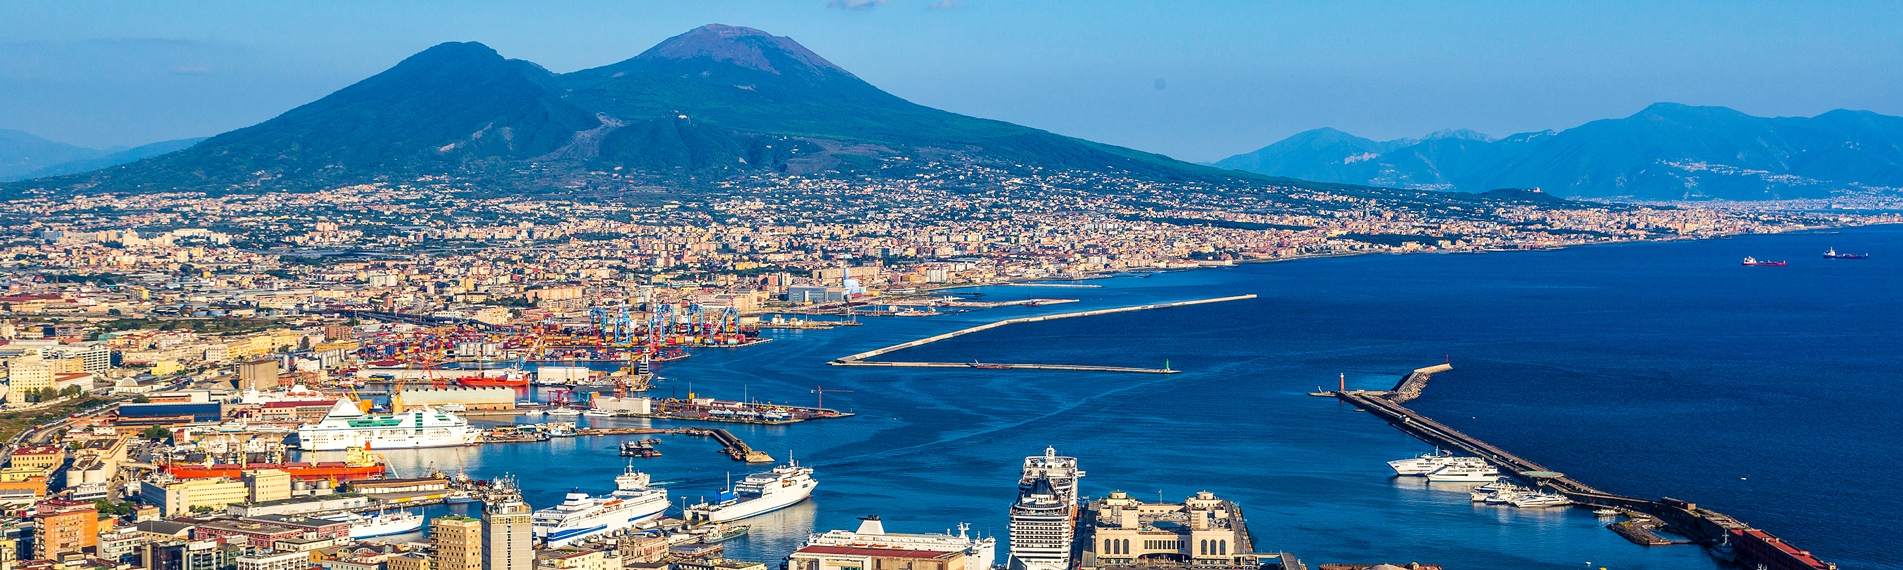 Napoles: vista del Golfo con el Vesuvio a la distancia